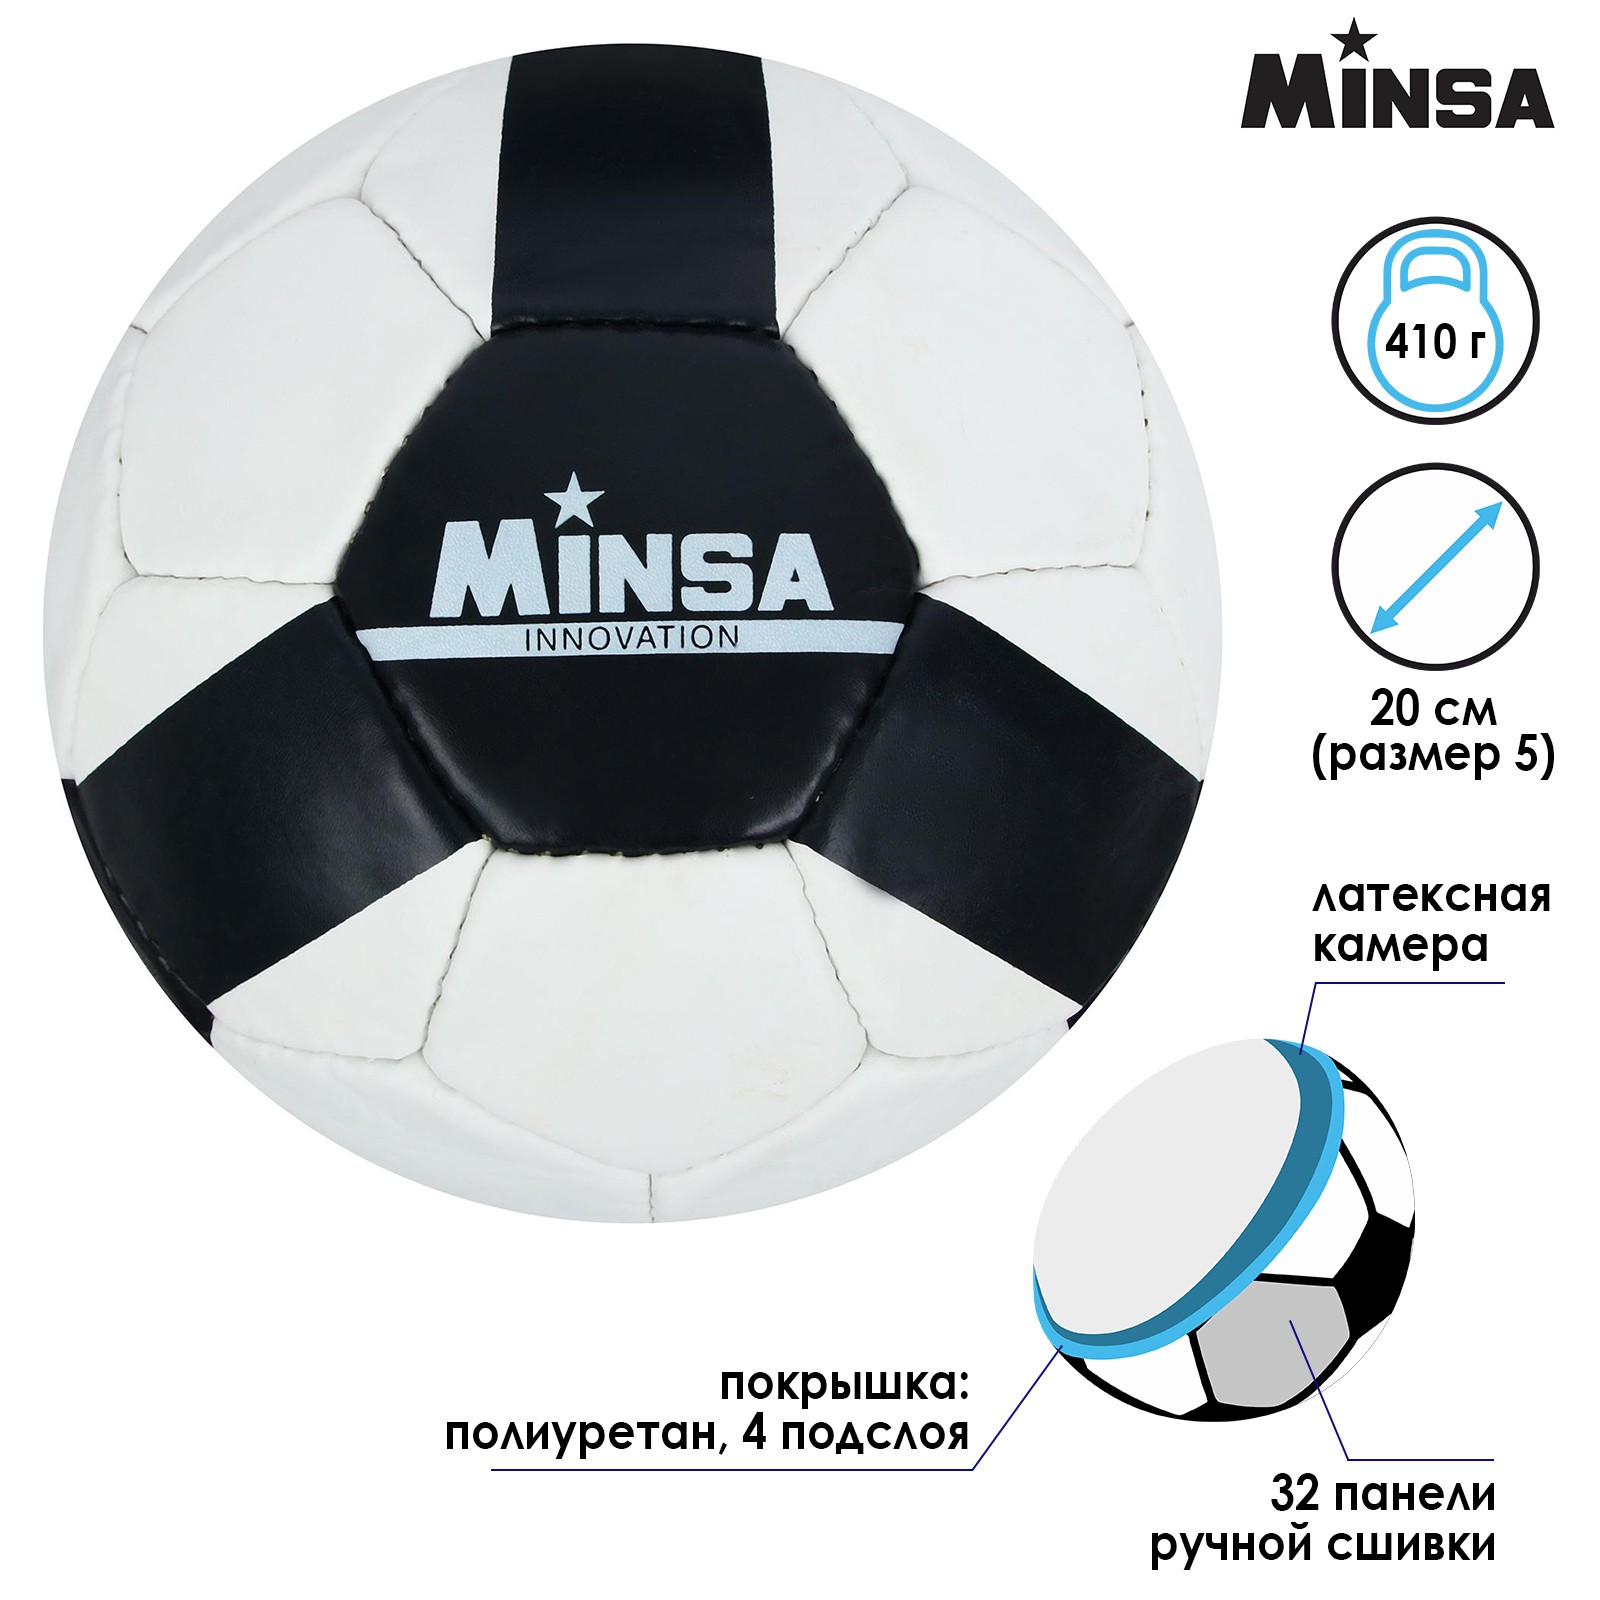 Мяч MINSA футбольный PU. ручная сшивка. 32 панели. размер 5. 410 г - фото 2